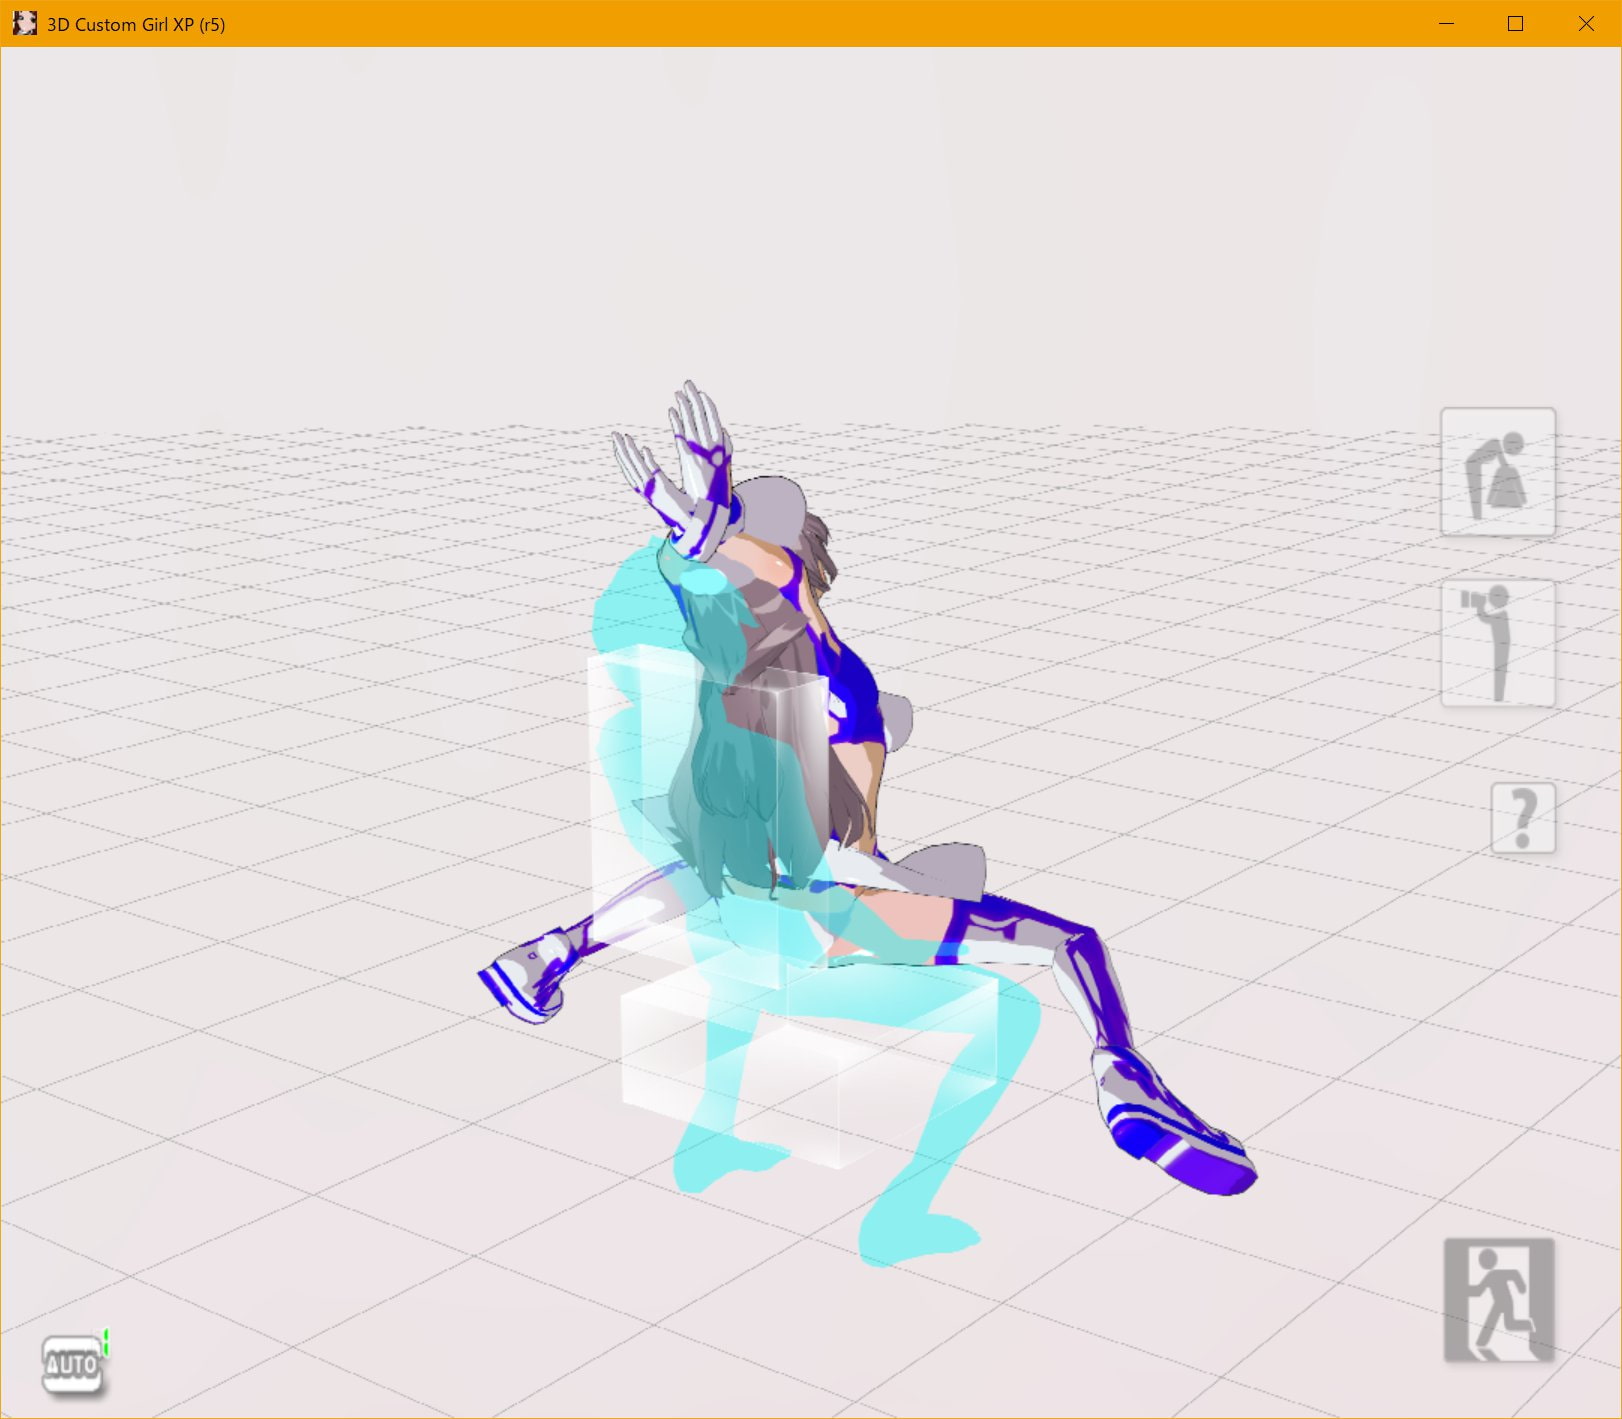 3D custom girl sitting motion